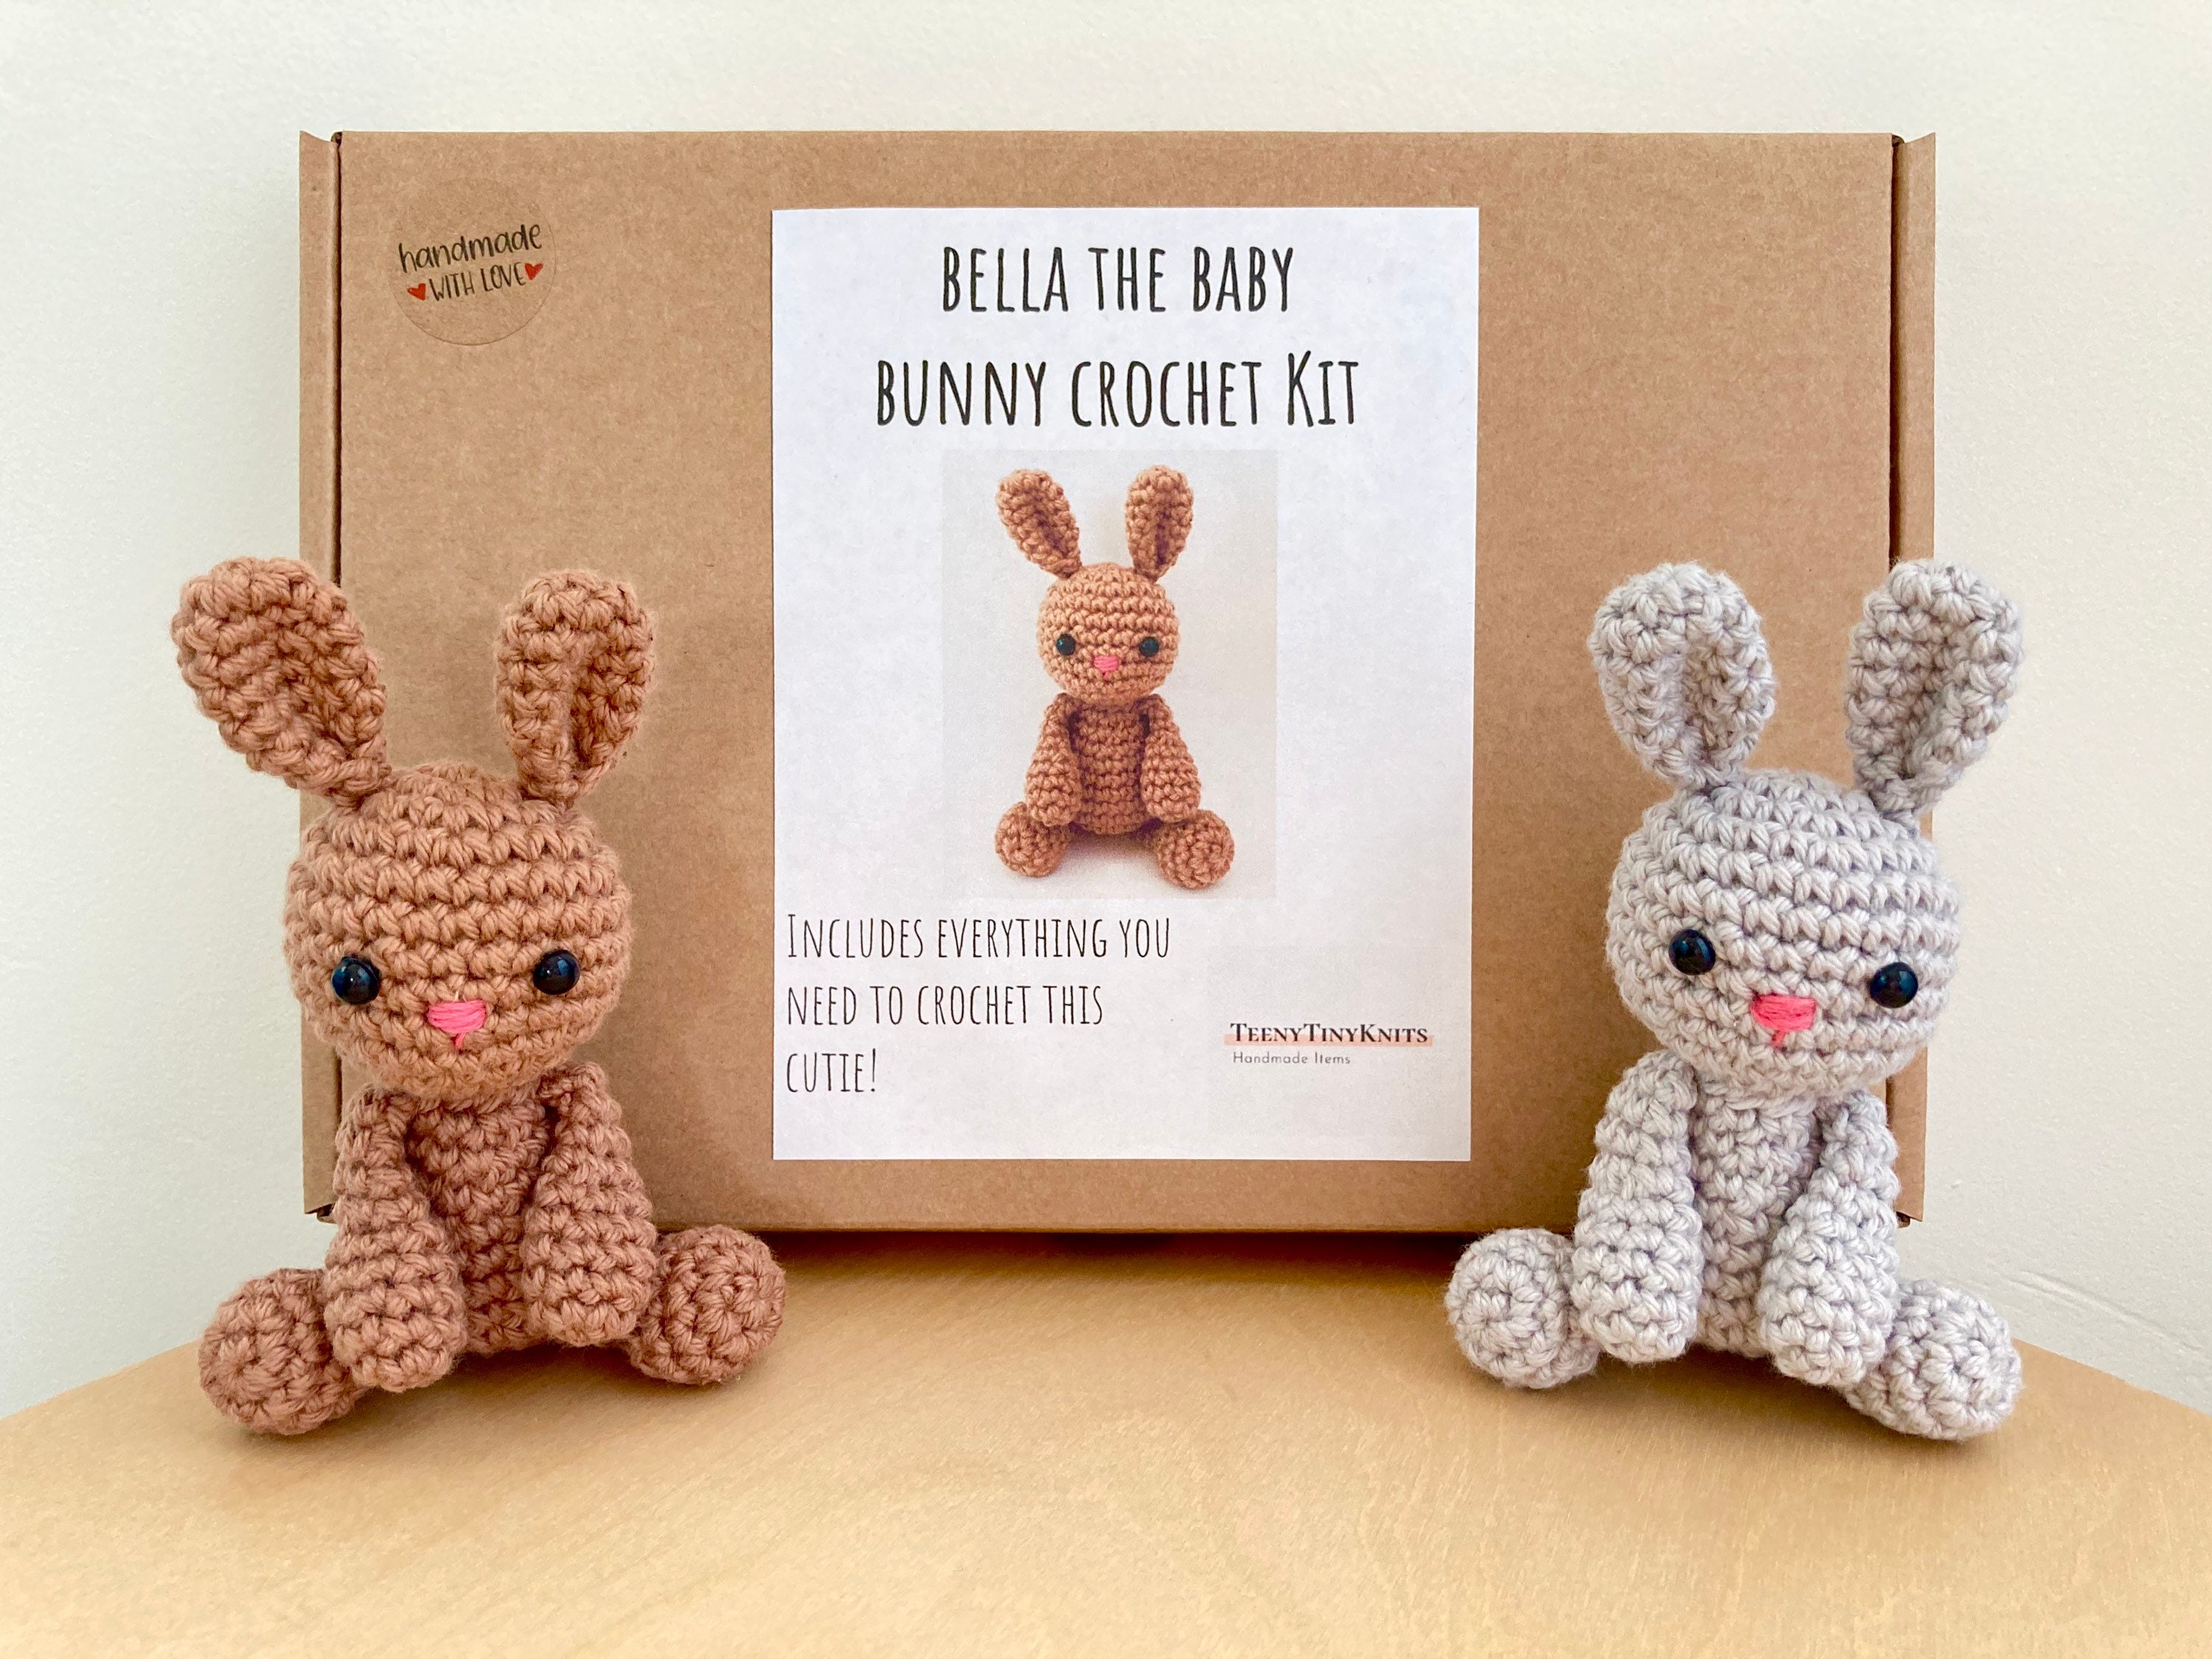 Bunny Doll Crochet Kit. Crochet Kit. Crochet Materials. Amigurumi